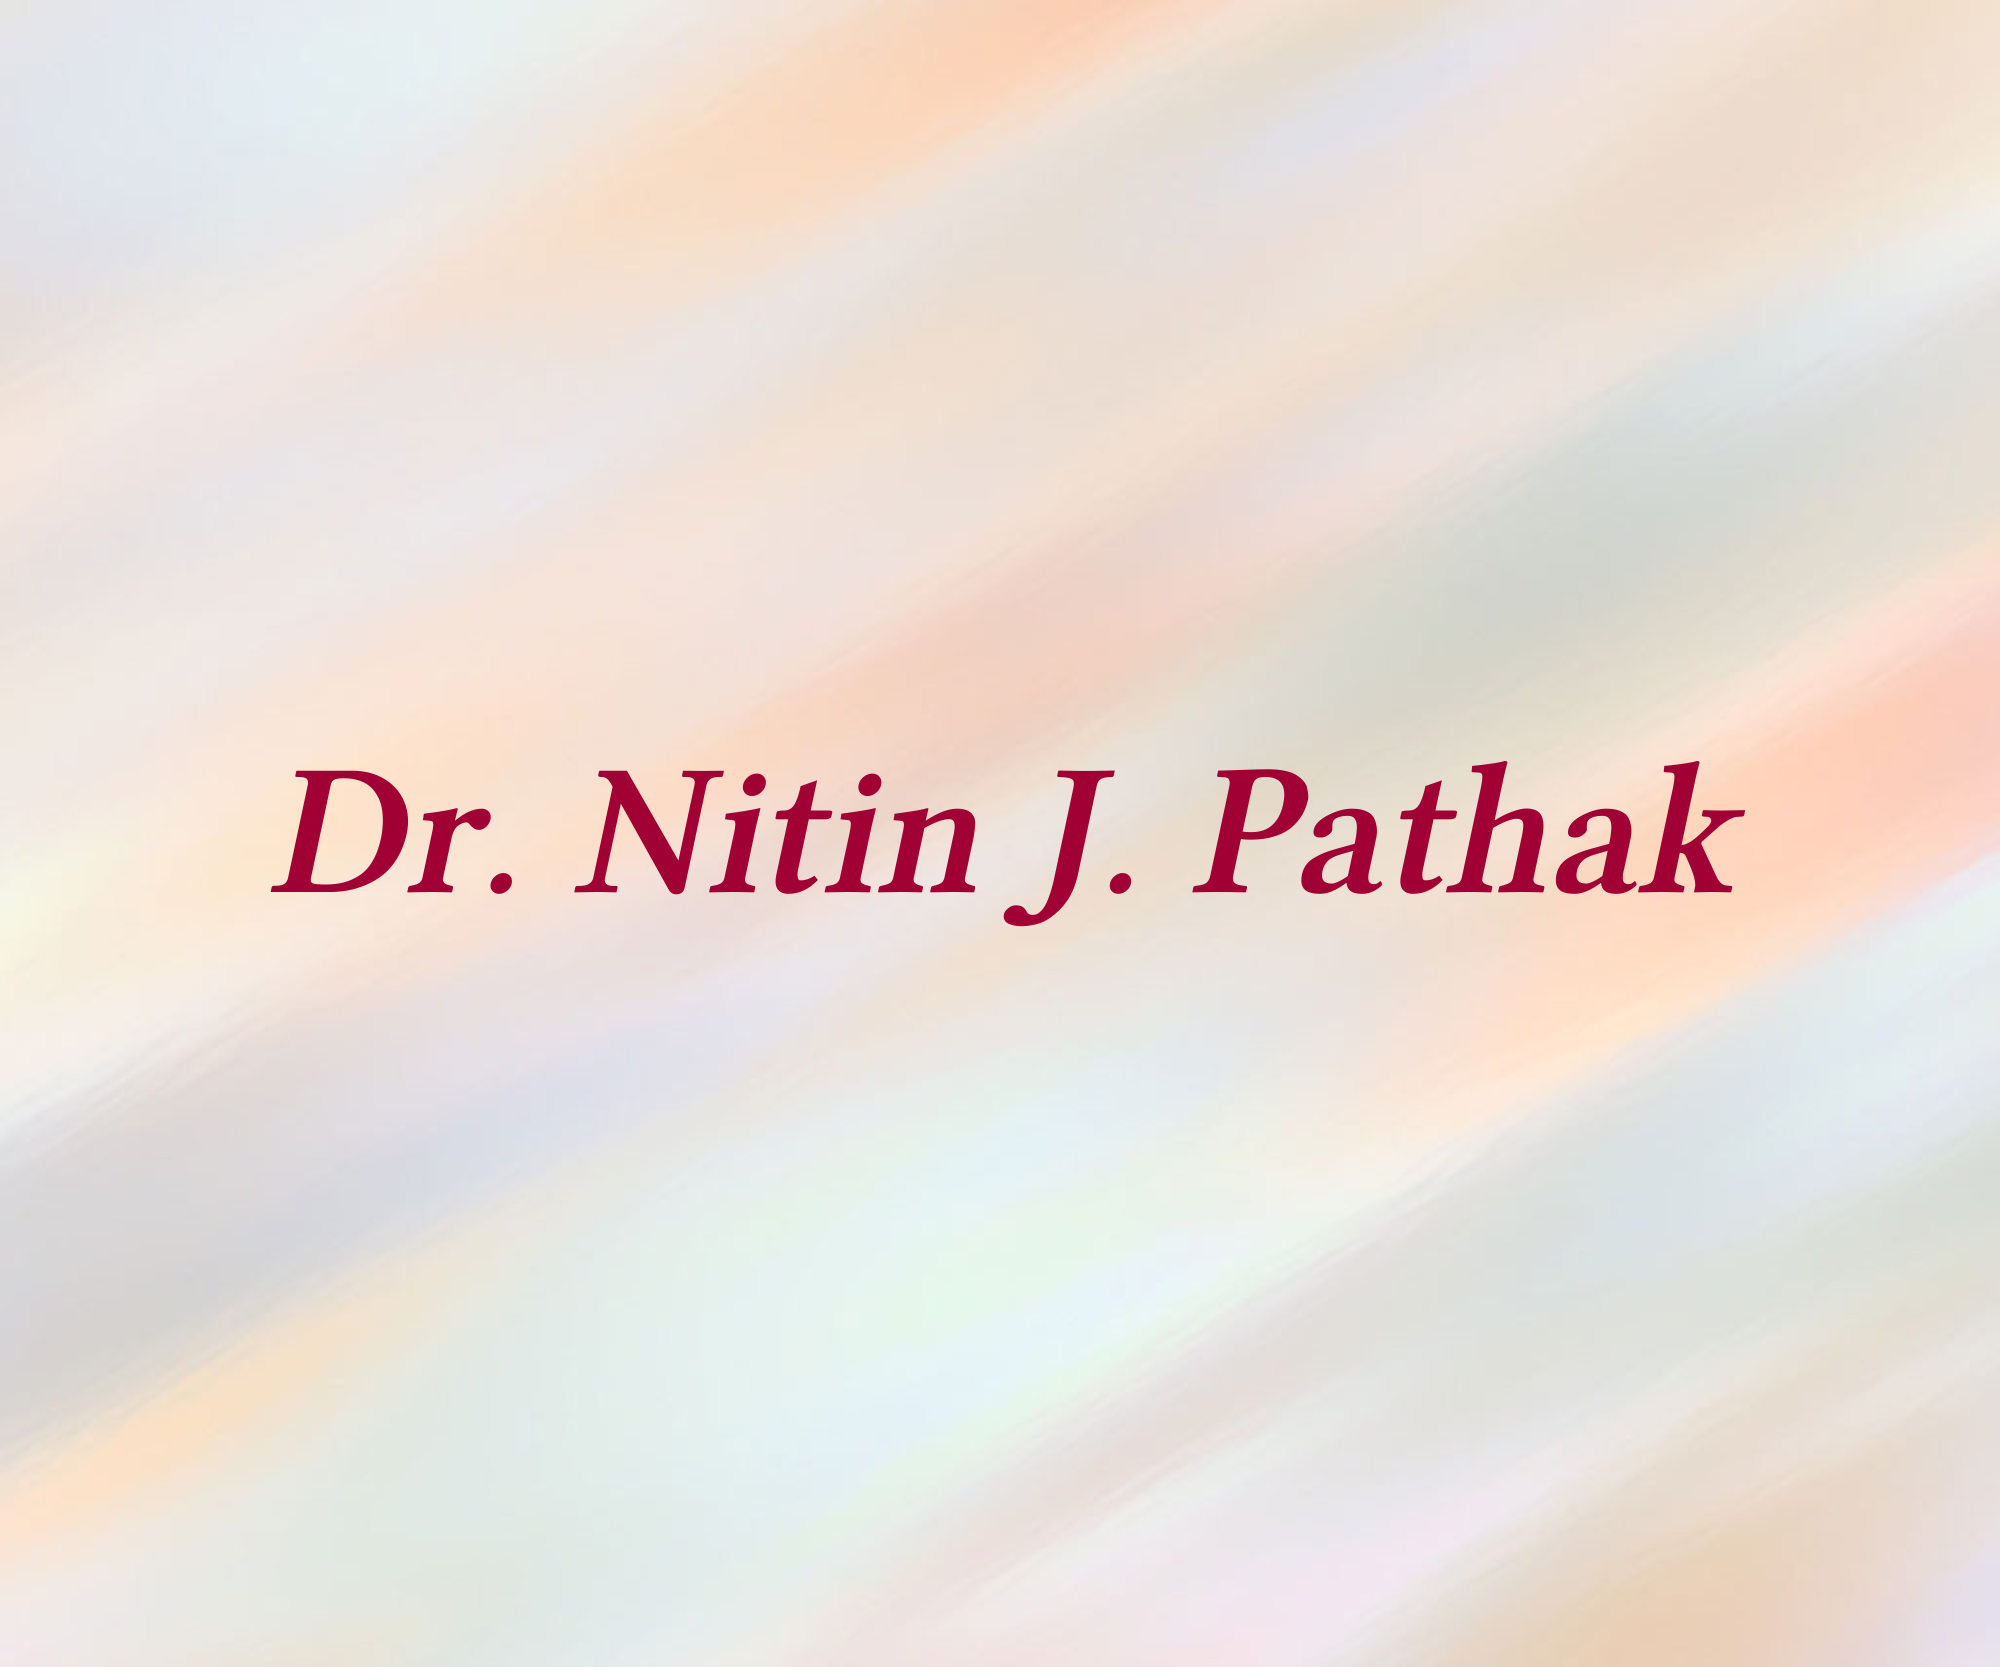 Dr. Nitin J. Pathak  